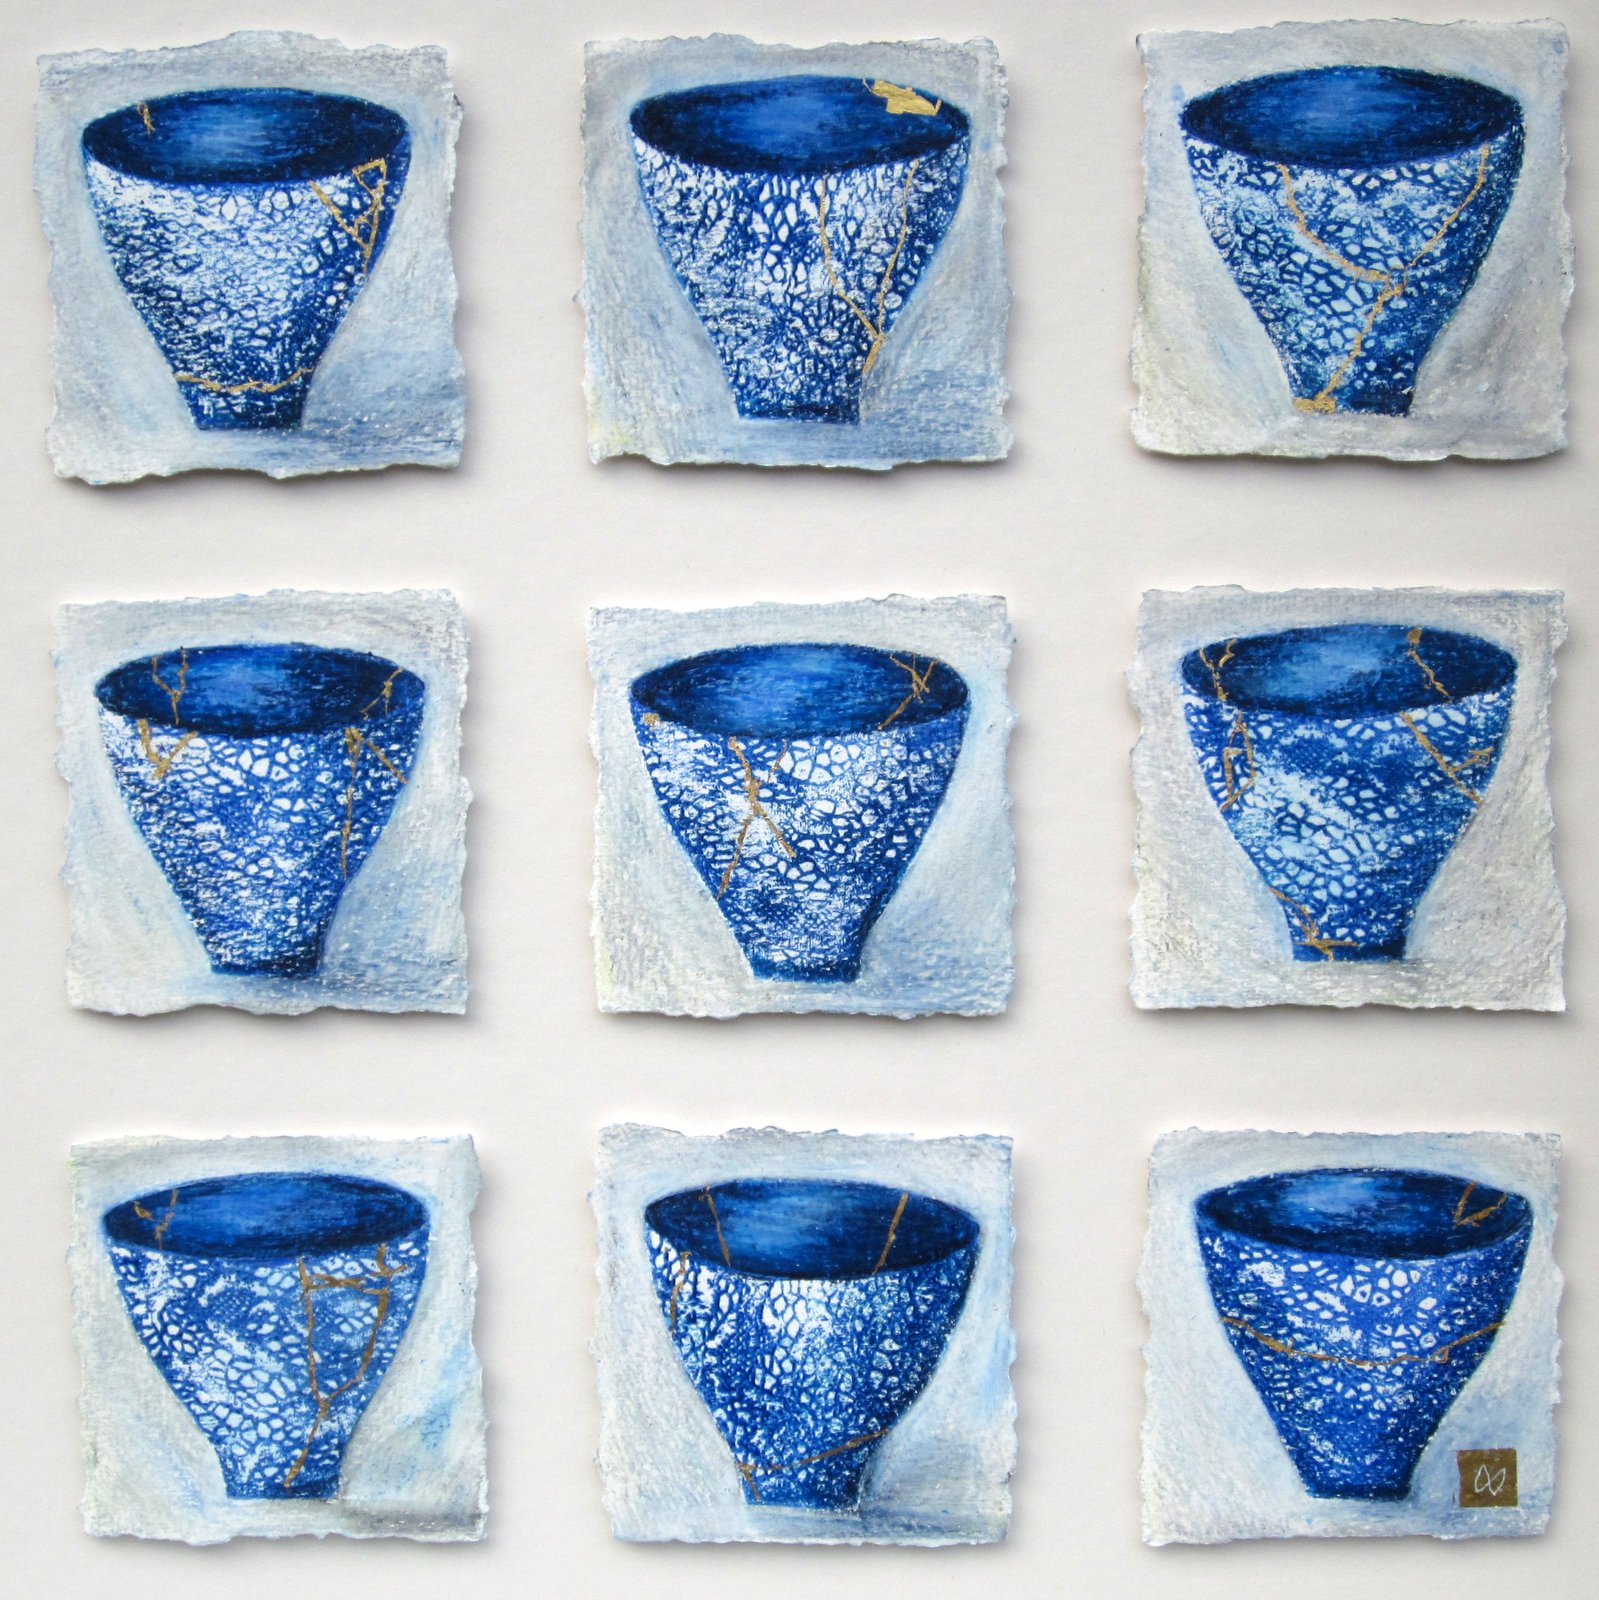 Nine blue lace kintsugi tea bowls with gold repair